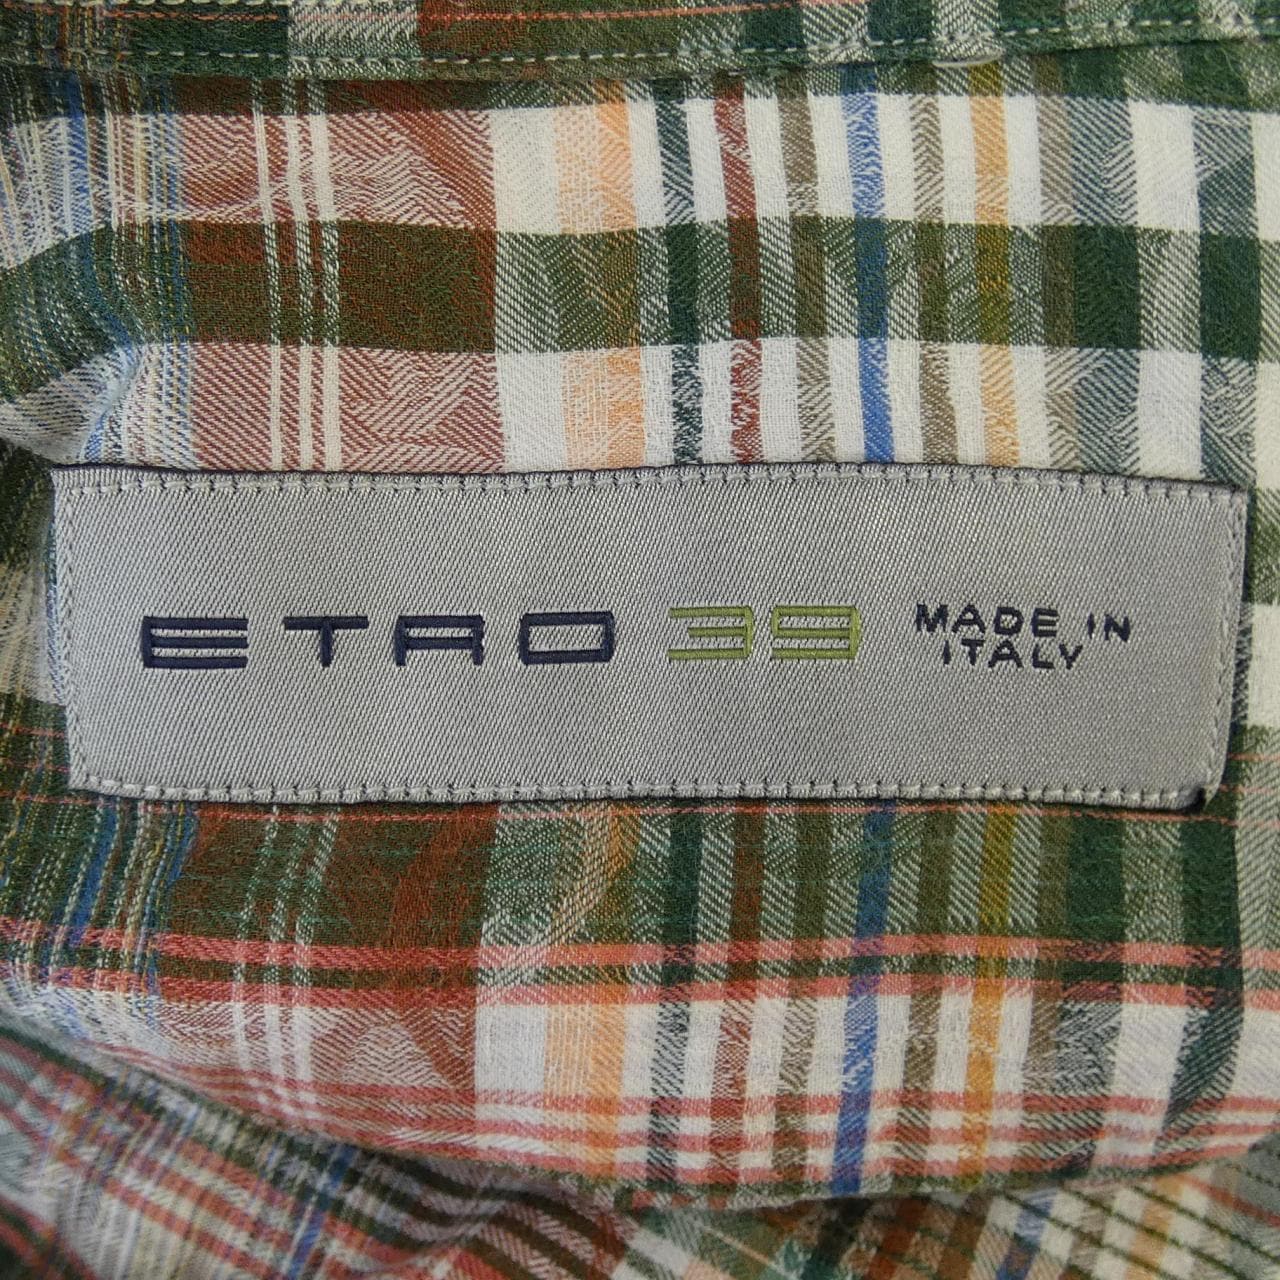 Etro ETRO shirt